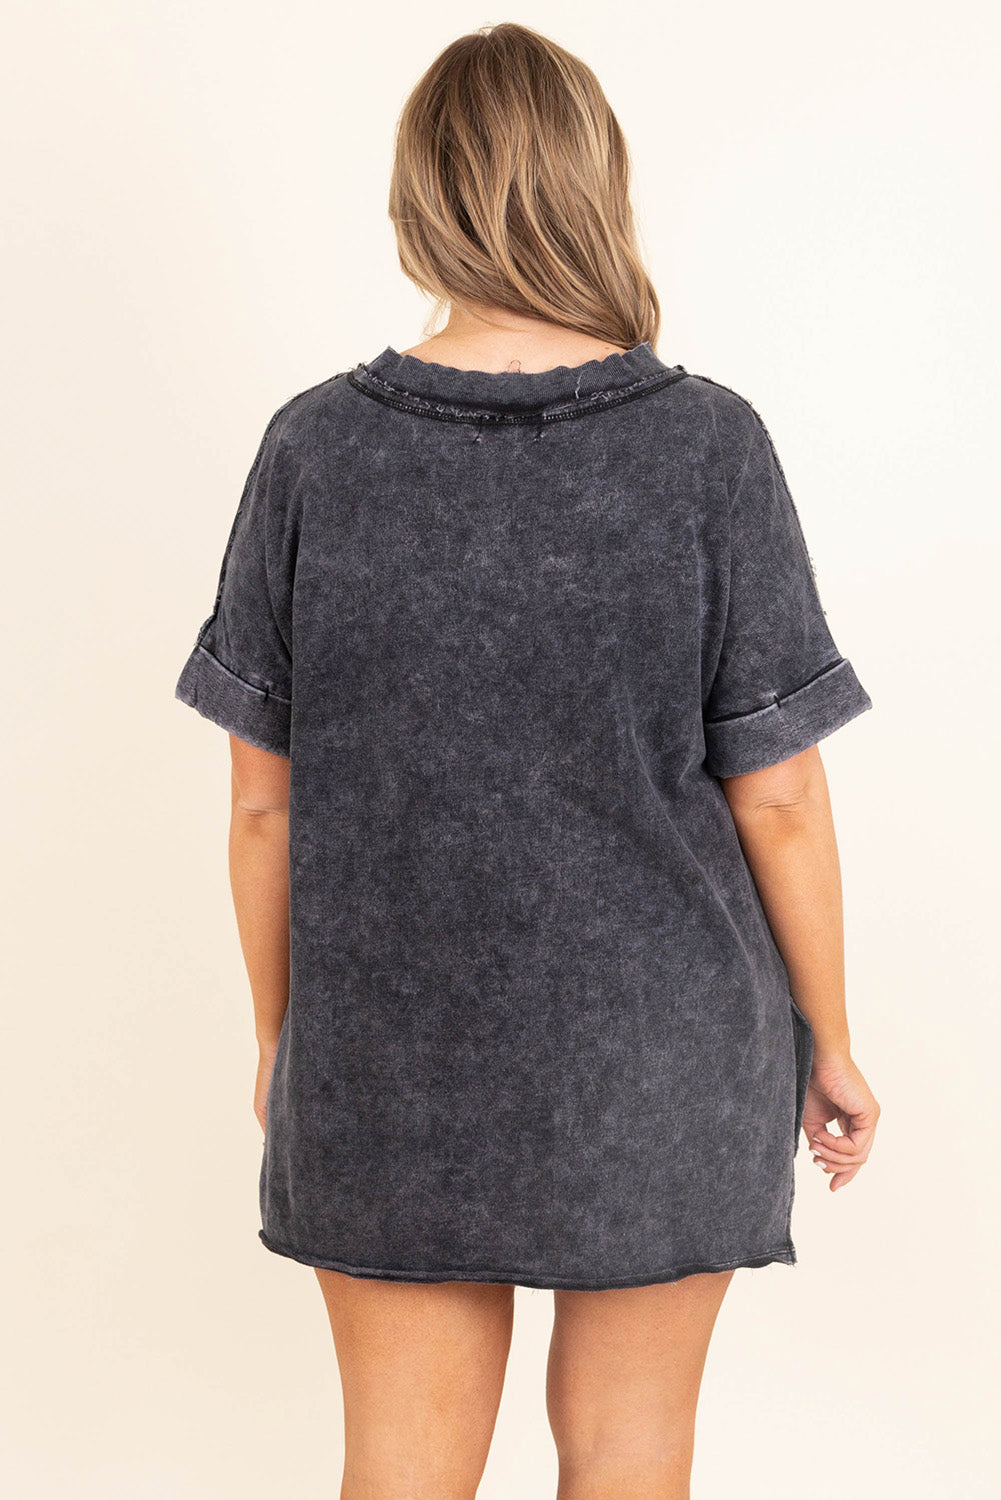 T-shirt oversize gris délavé effet vieilli avec poche plaquée et fente